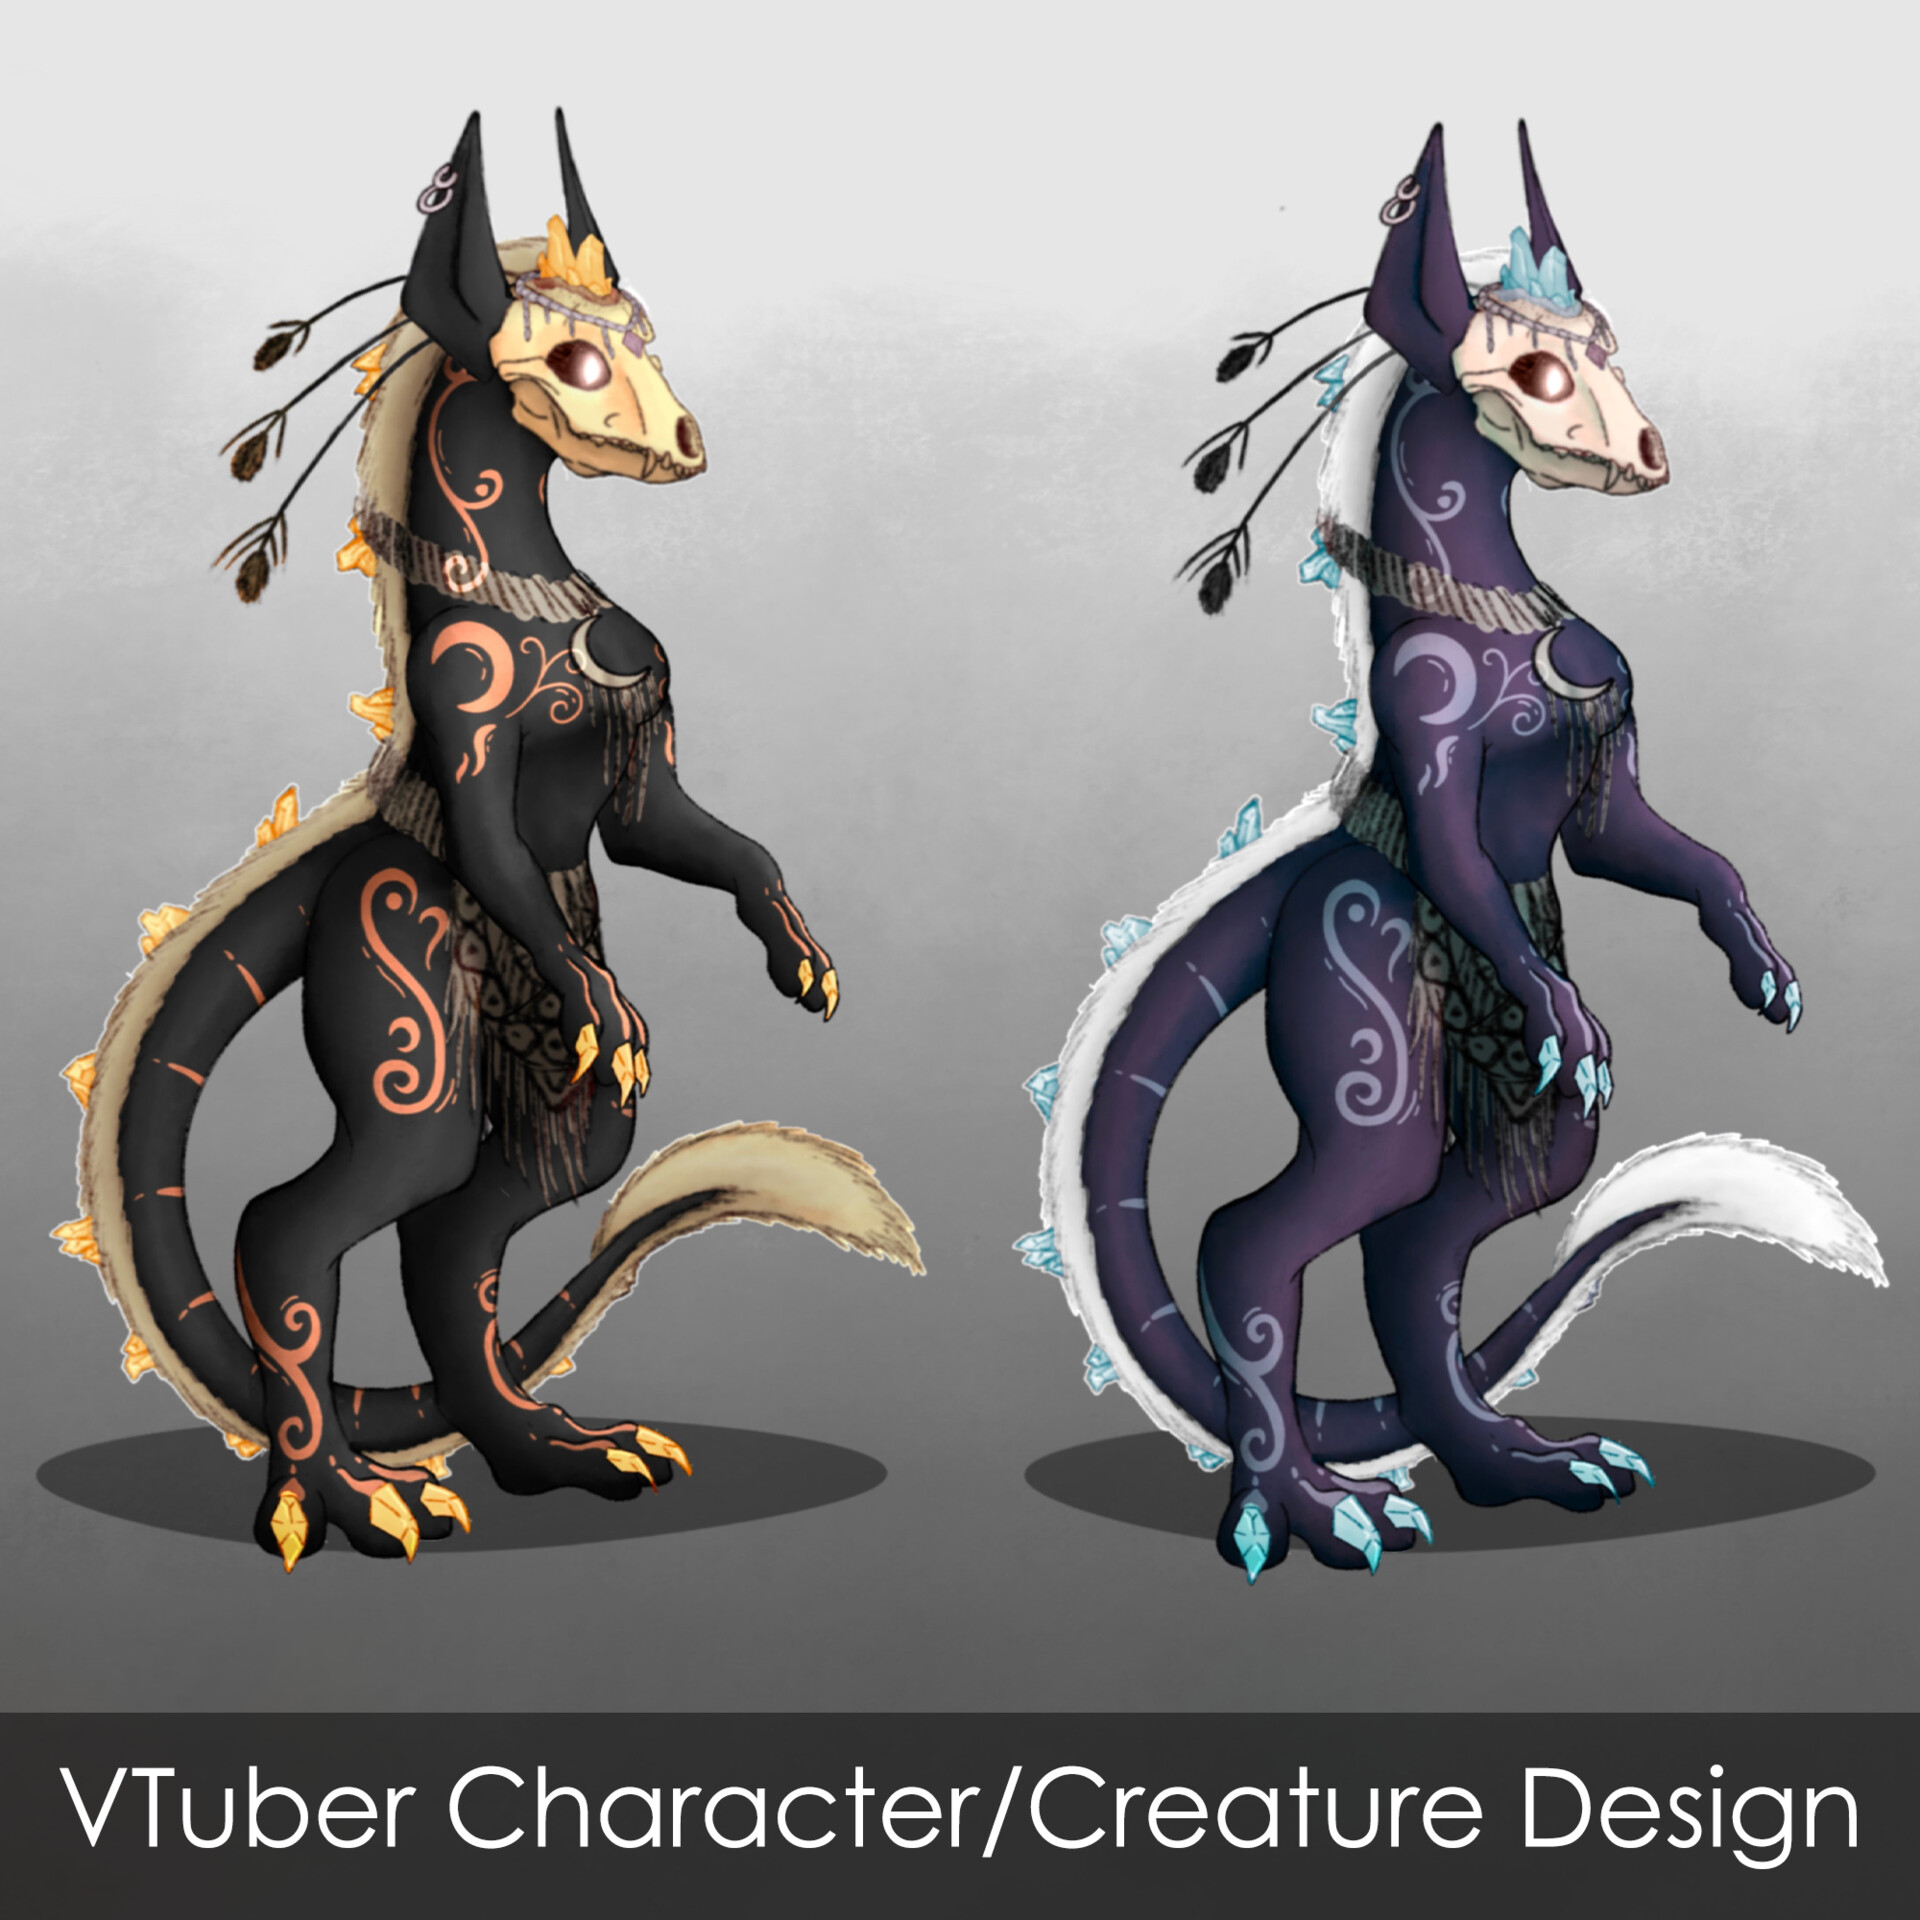 ArtStation - VTuber Character/Creature Design